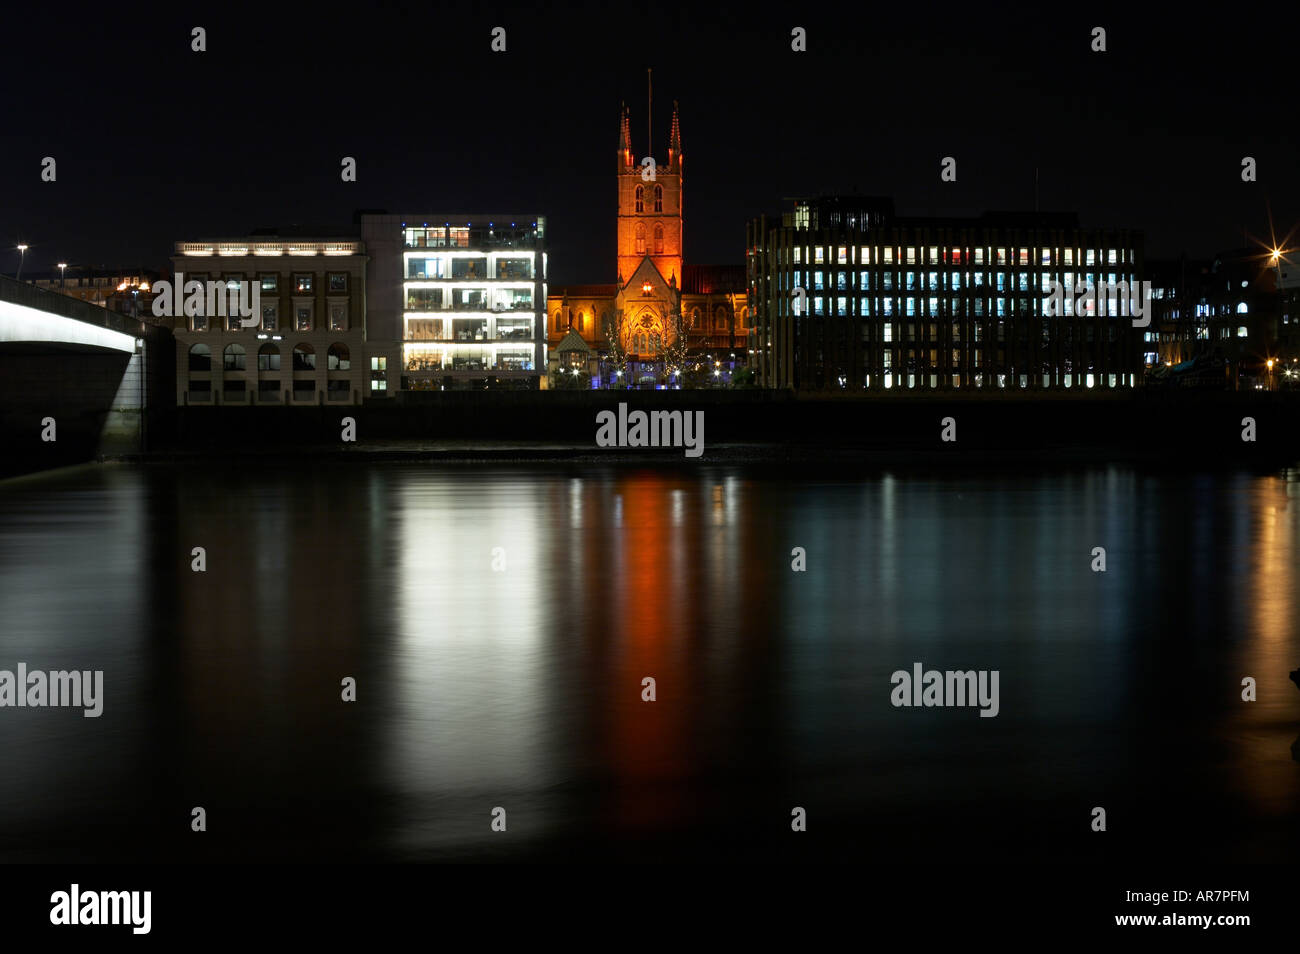 Scène de nuit d'immeubles de bureaux sur la Tamise à Londres Angleterre Royaume-uni Banque D'Images